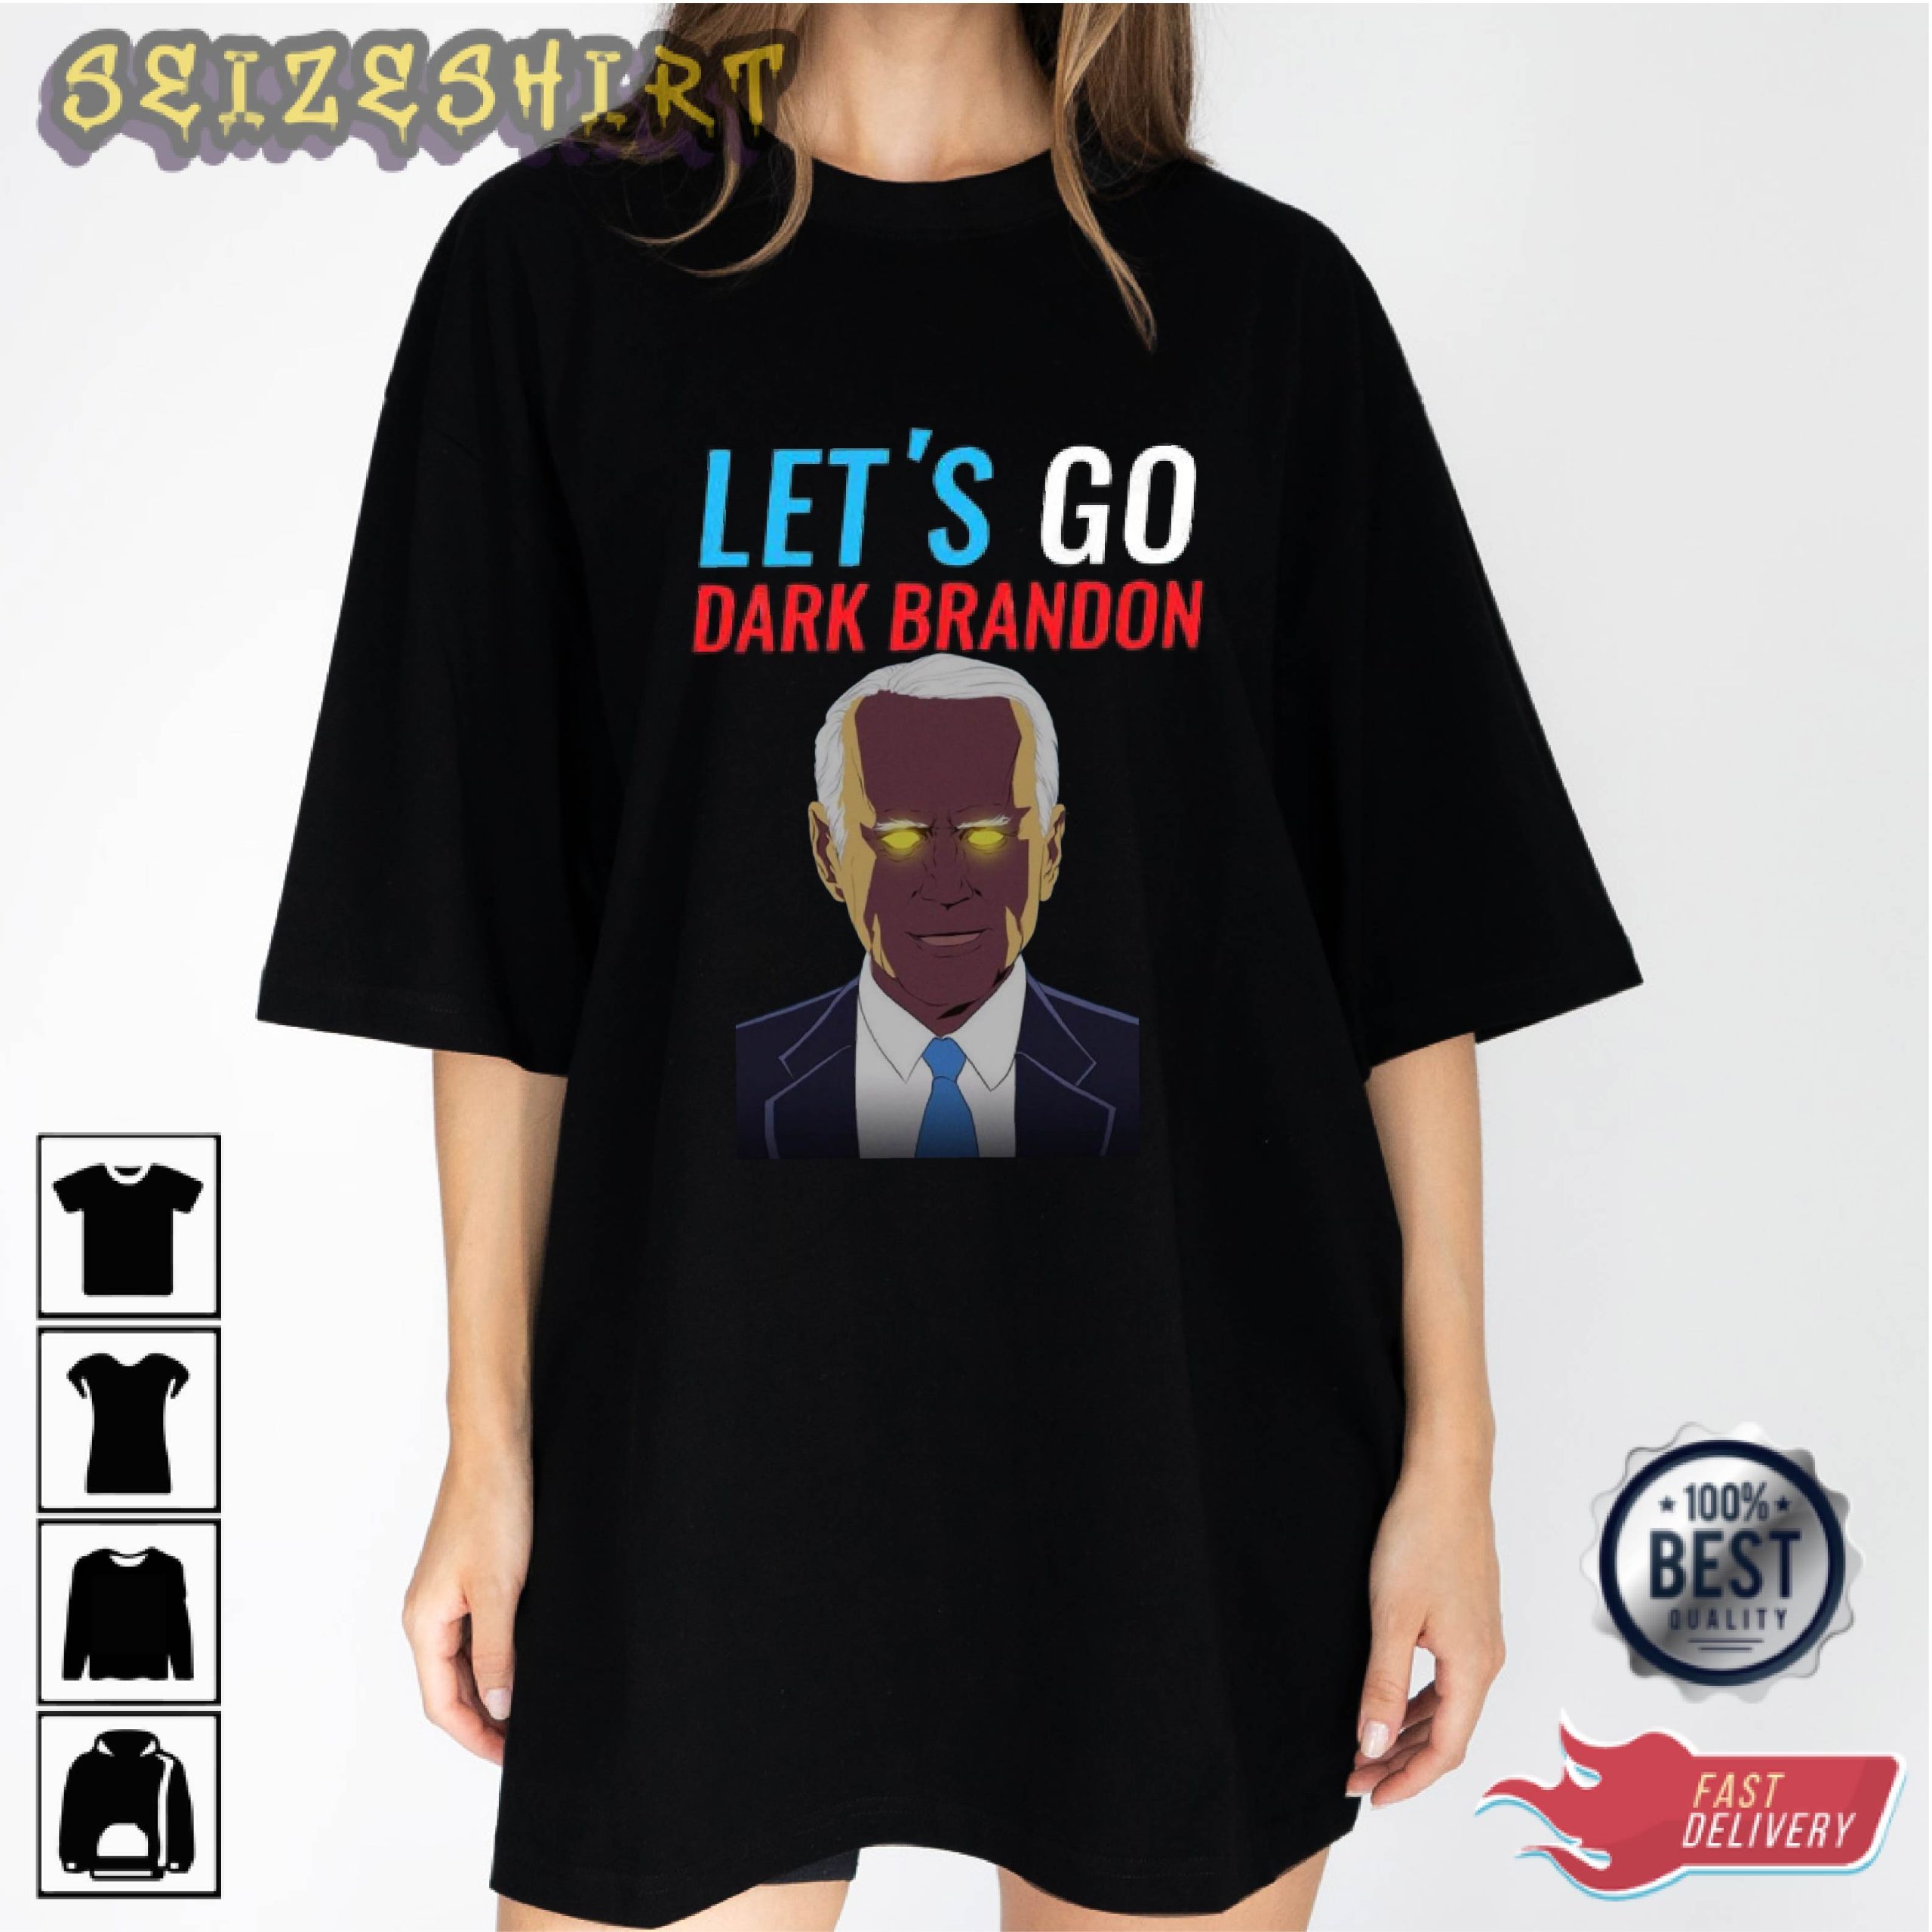 Let's Go Dark Brandon Trending Graphic Tee Long Sleeve Shirt